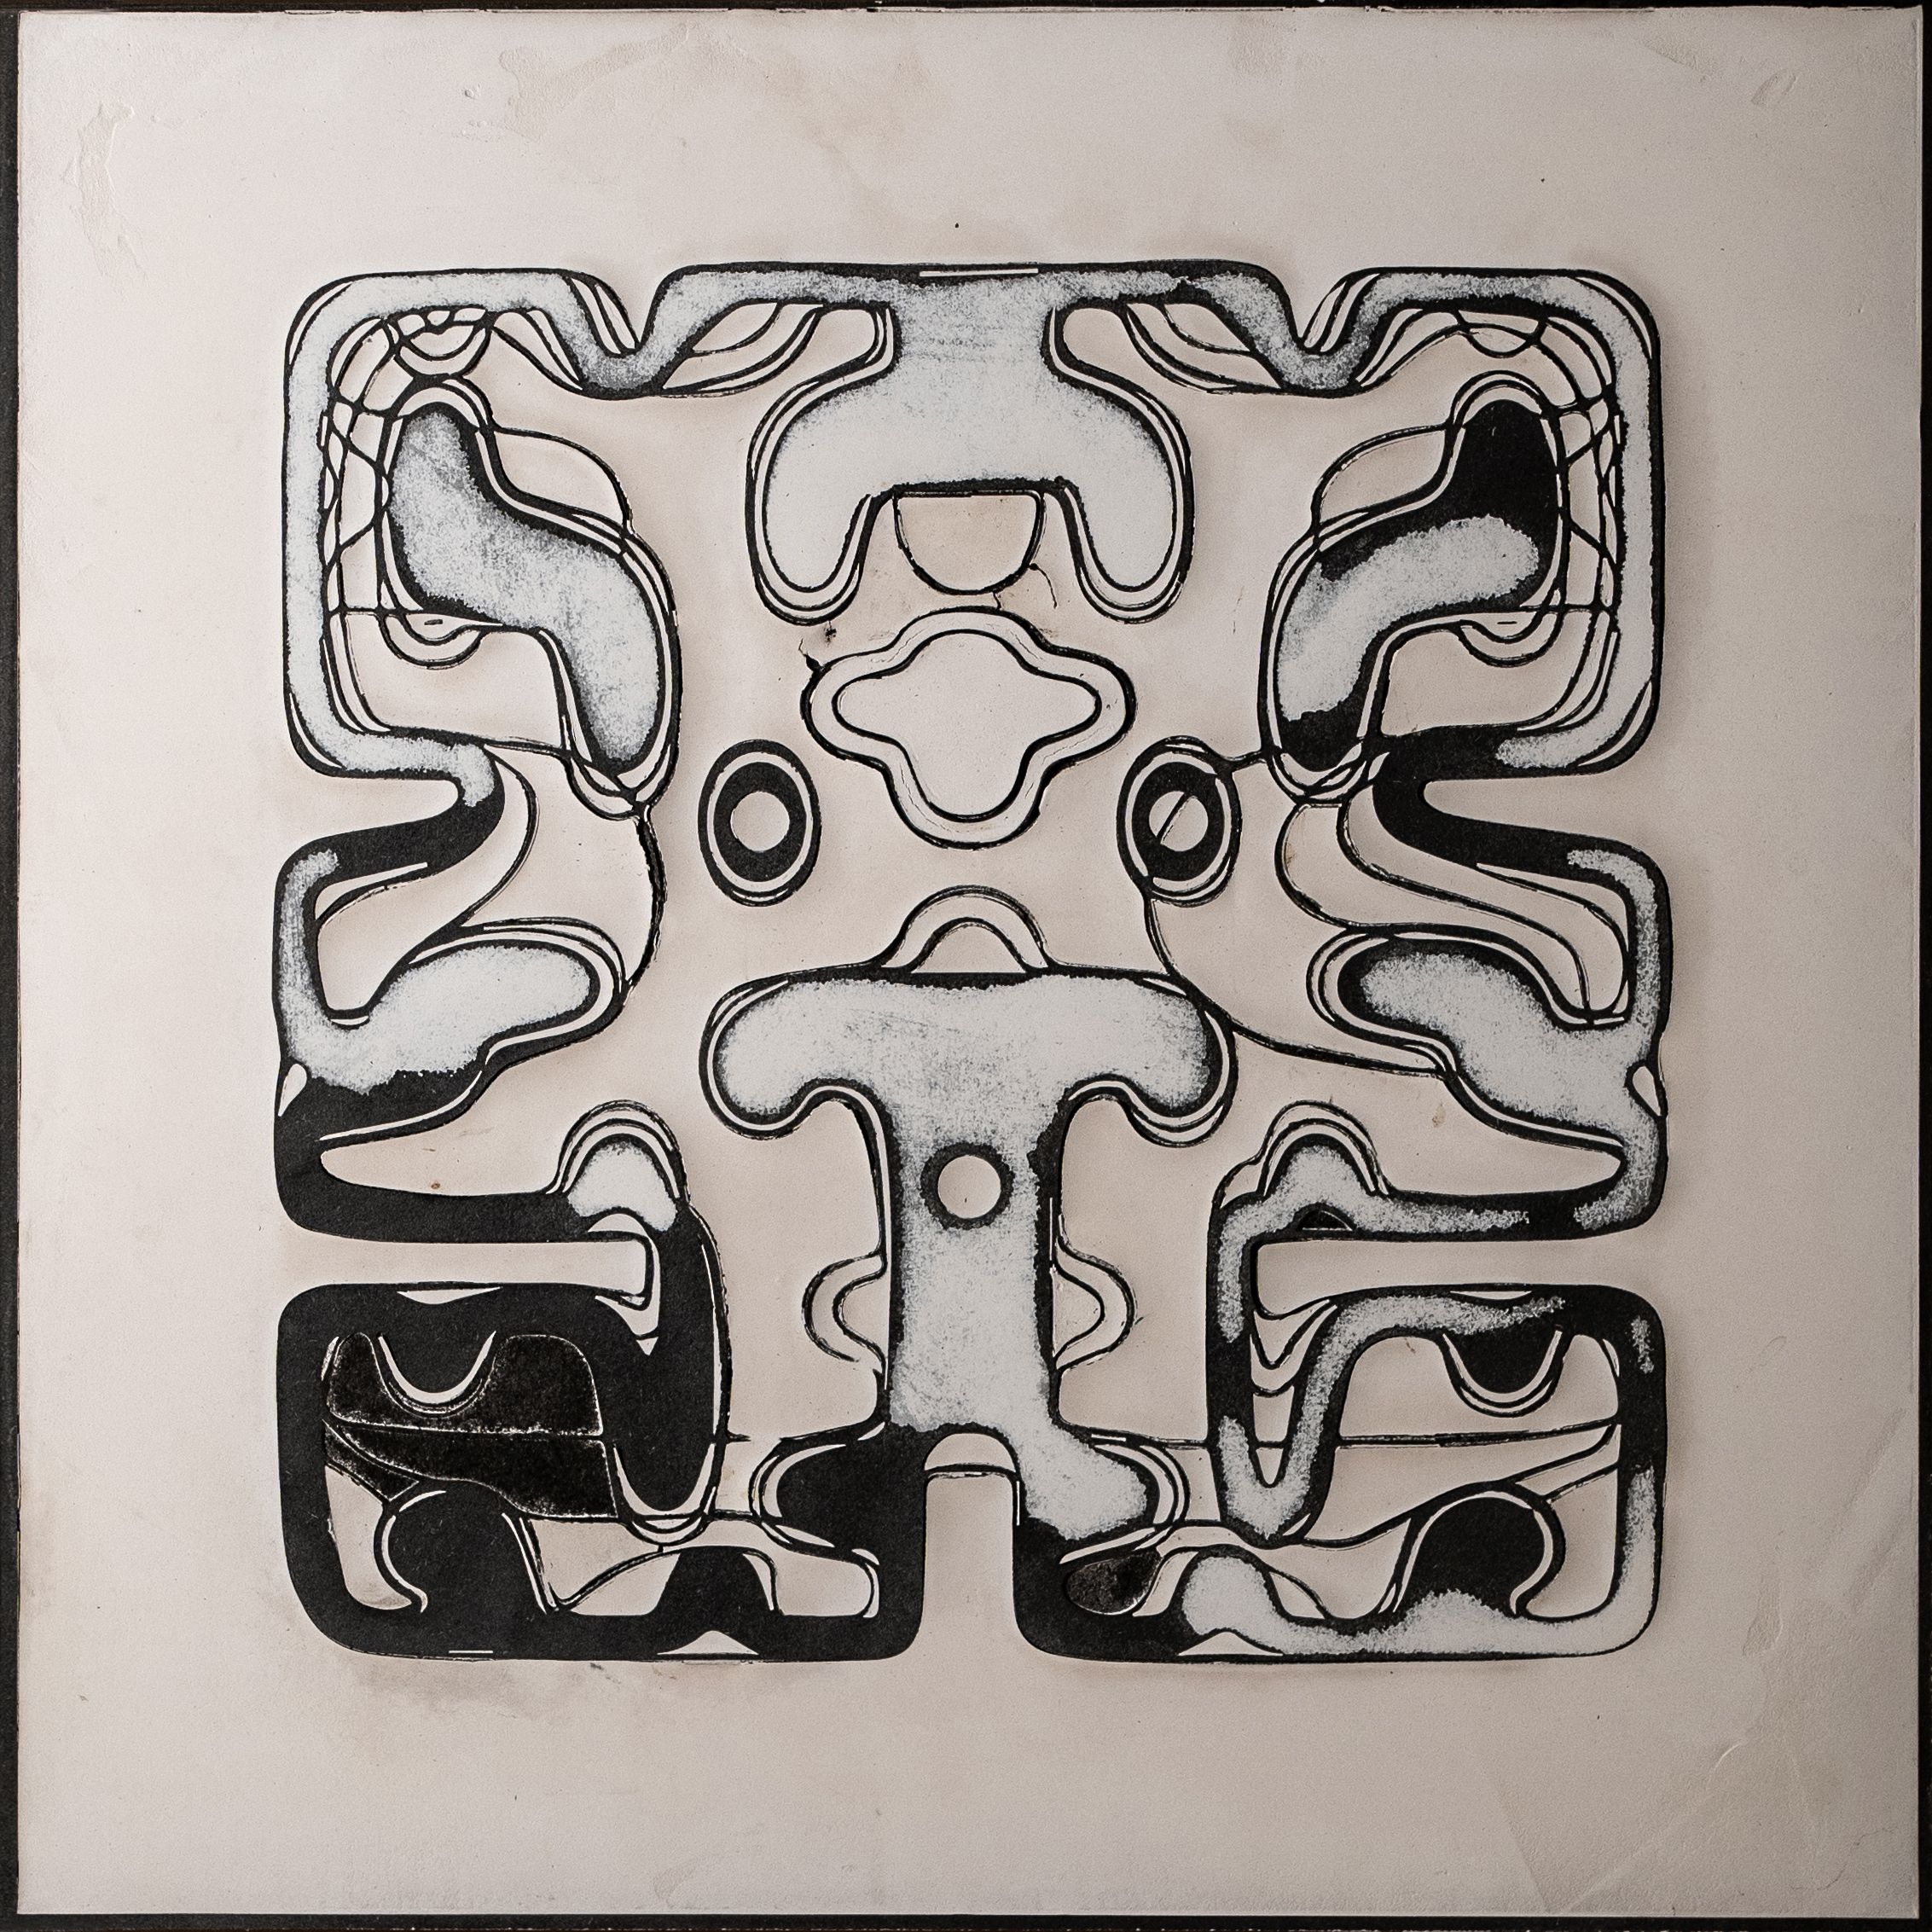  Alessandro Pongan, Brain Drain Tales (0-01-04-23), 2020, graffito, intonaco su MDF nero, 65 x 65 cm